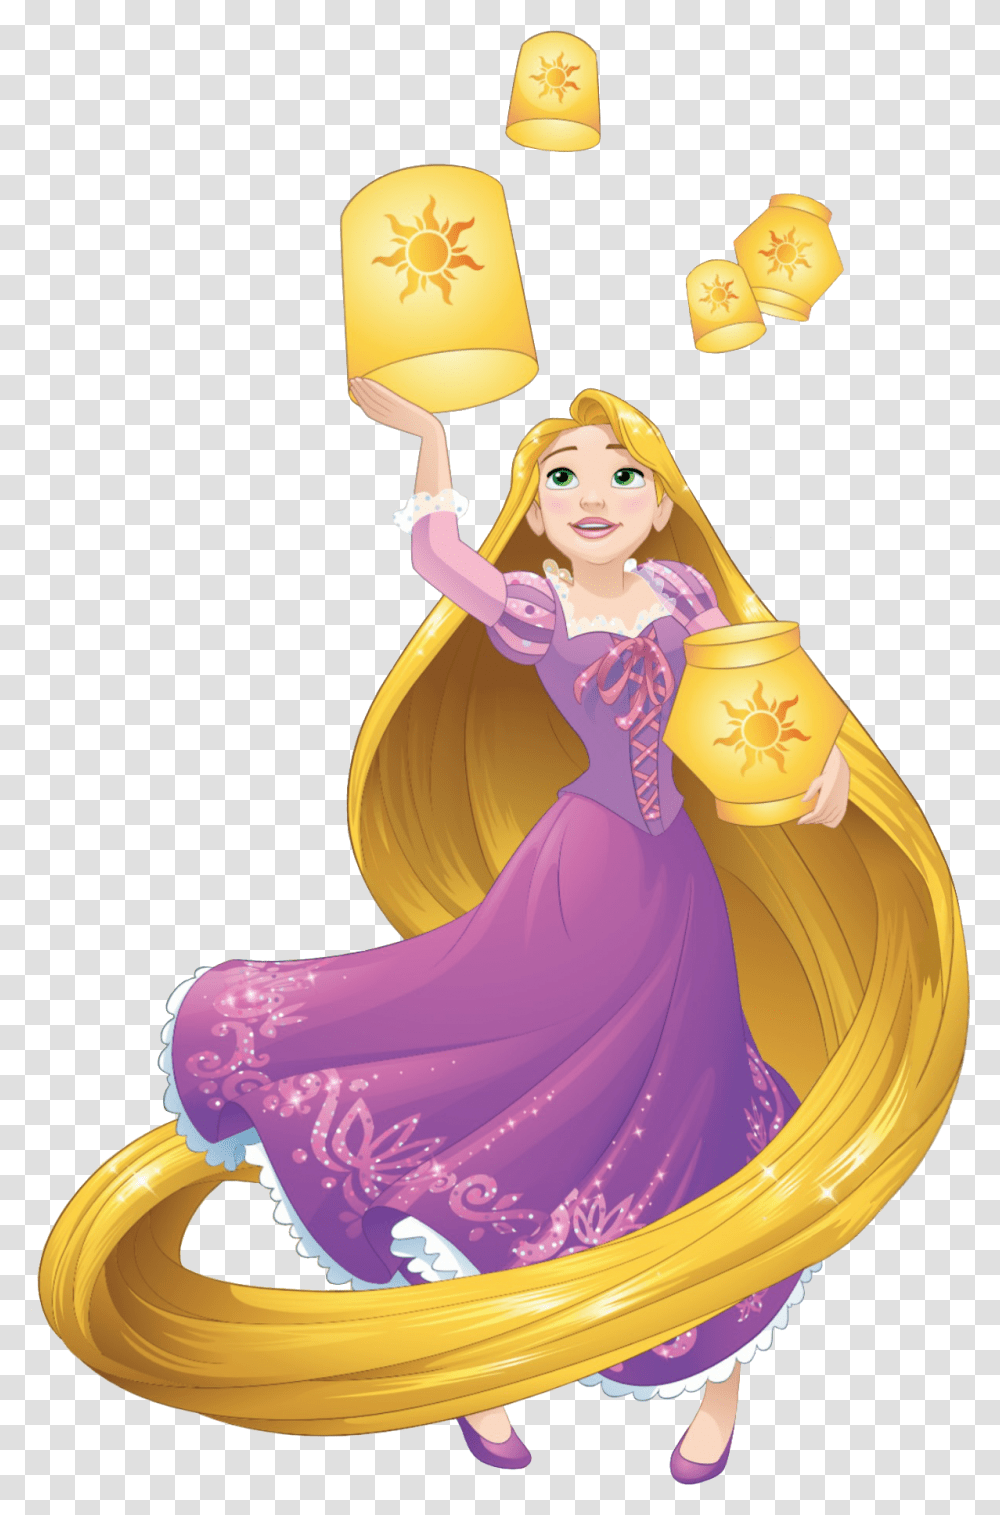 Rapunzel Clipart Background Disney Princess Rapunzel Hd, Person, Human, Dance Pose, Leisure Activities Transparent Png